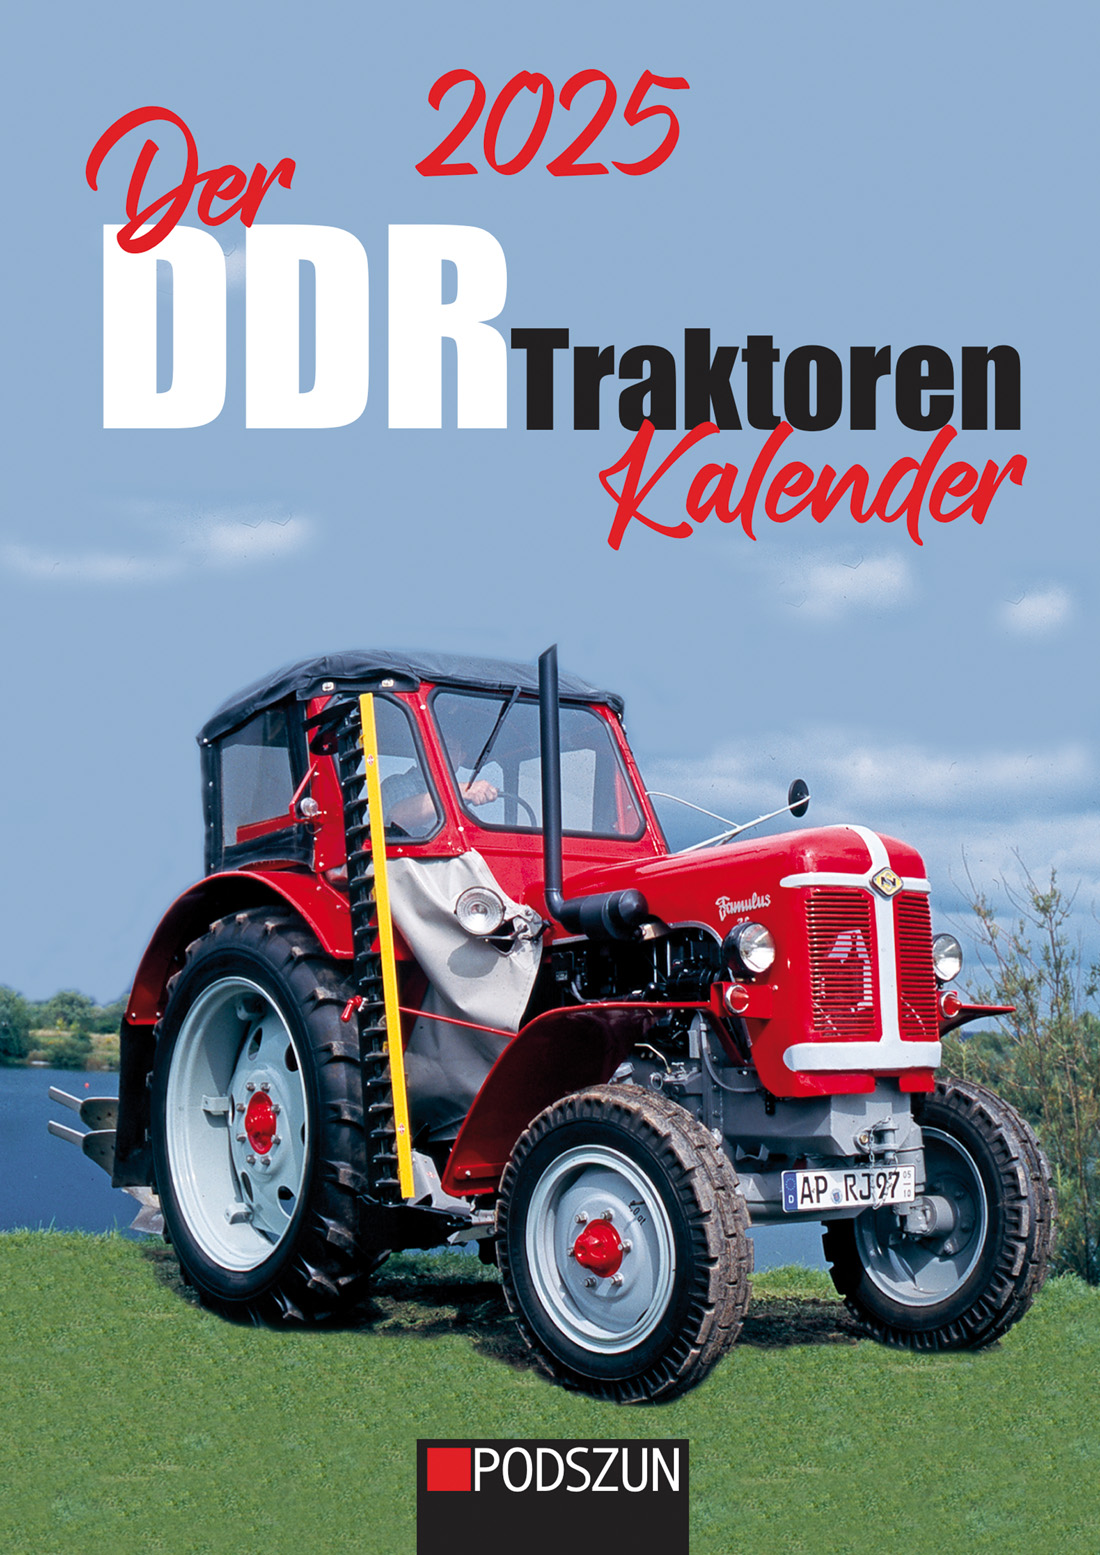 Der DDR Traktoren Kalender 2025